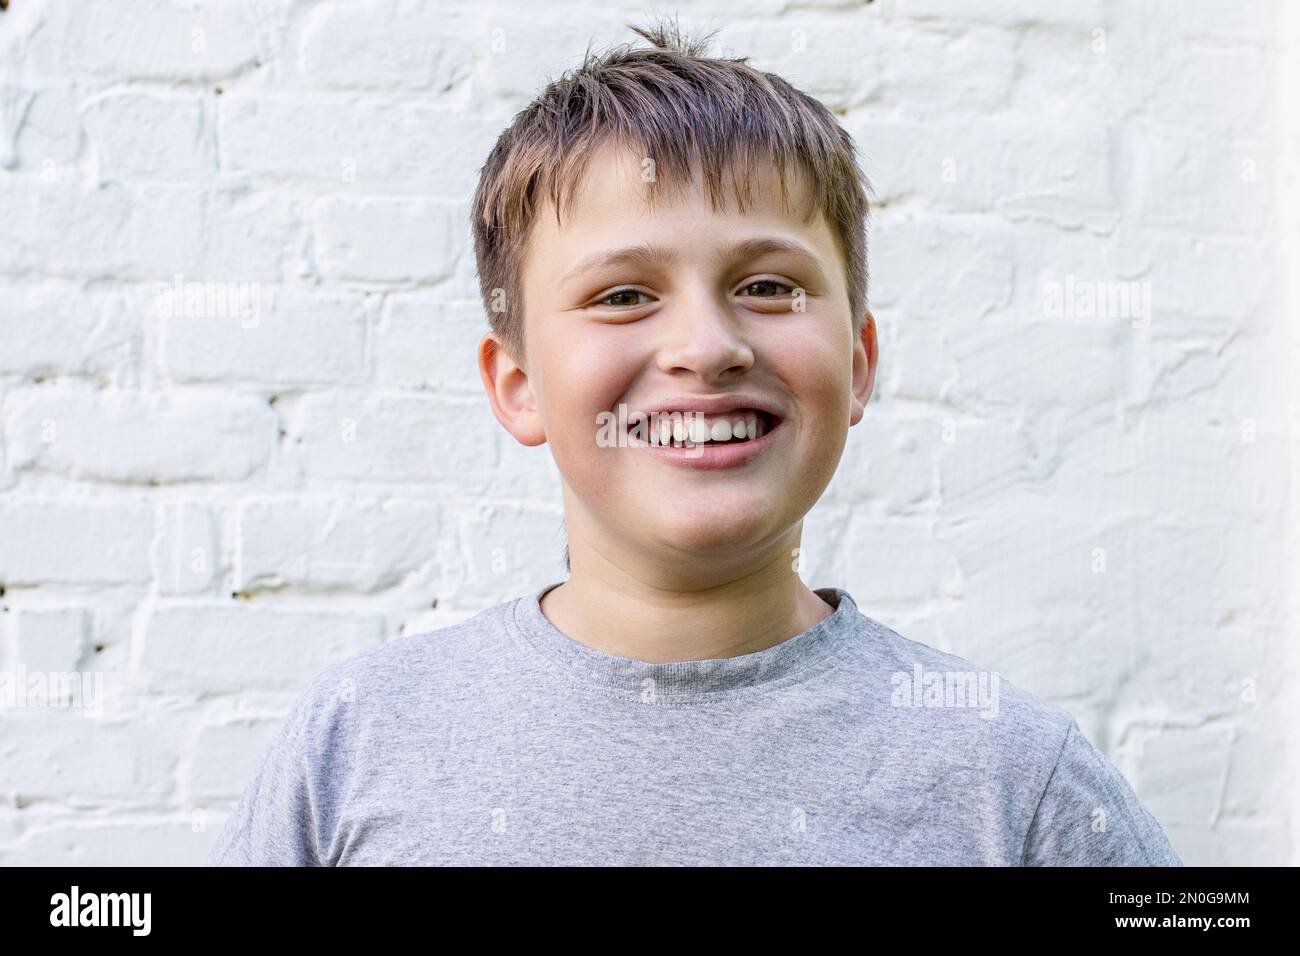 il ragazzo sorride felicemente. Ritratto di un fantastico ragazzino amichevole. bell'adolescente vicino a un muro di mattoni bianchi Foto Stock